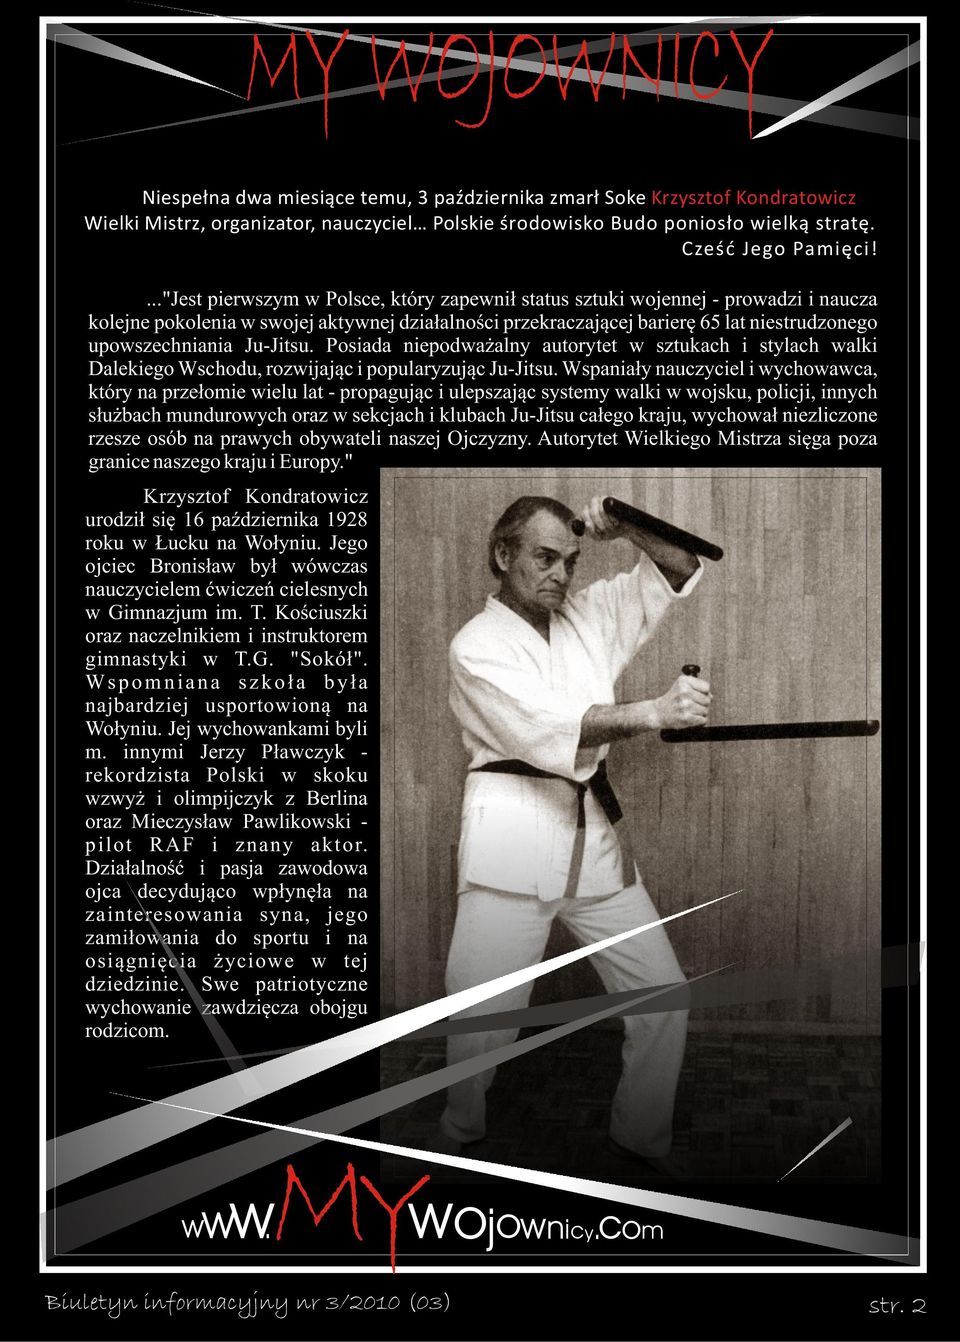 Ju-Jitsu. Posiada niepodważalny autorytet w sztukach i stylach walki Dalekiego Wschodu, rozwijając i popularyzując Ju-Jitsu.